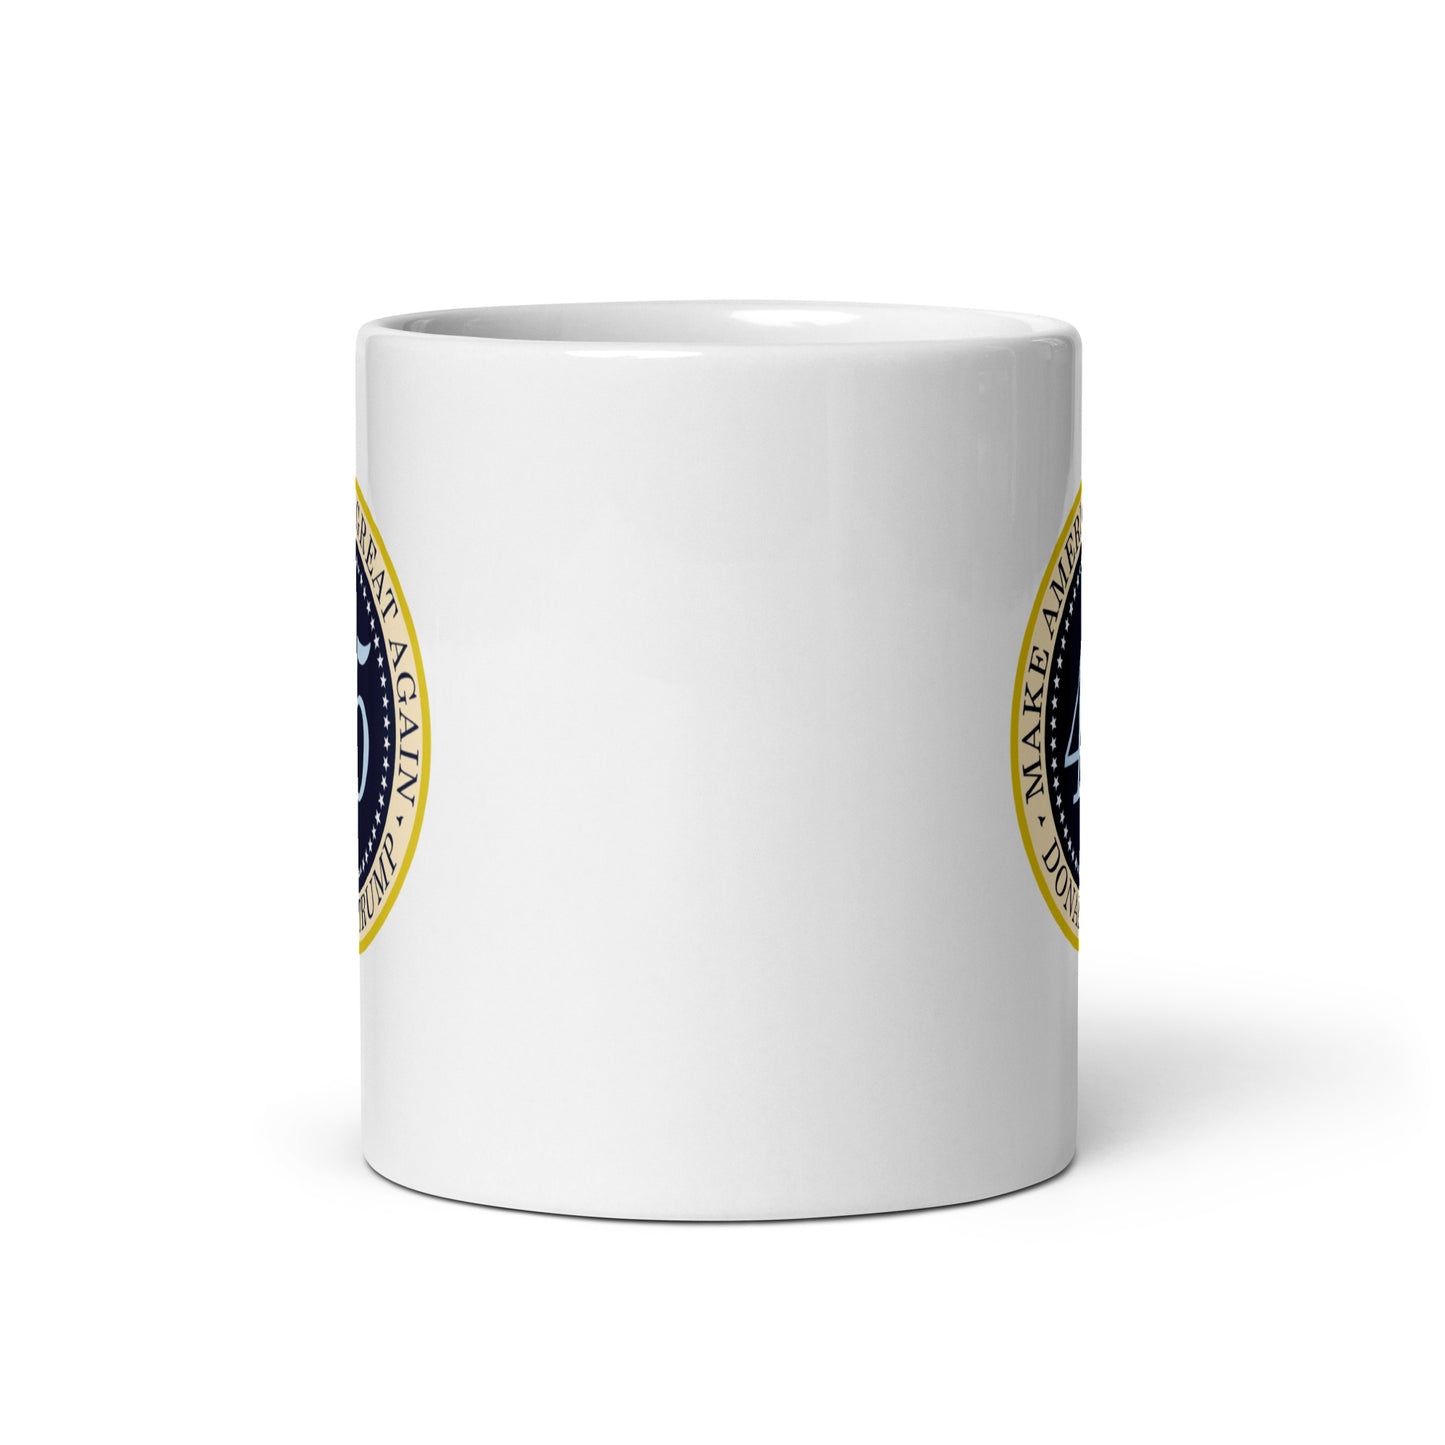 45 MAGA - White Glossy Mug